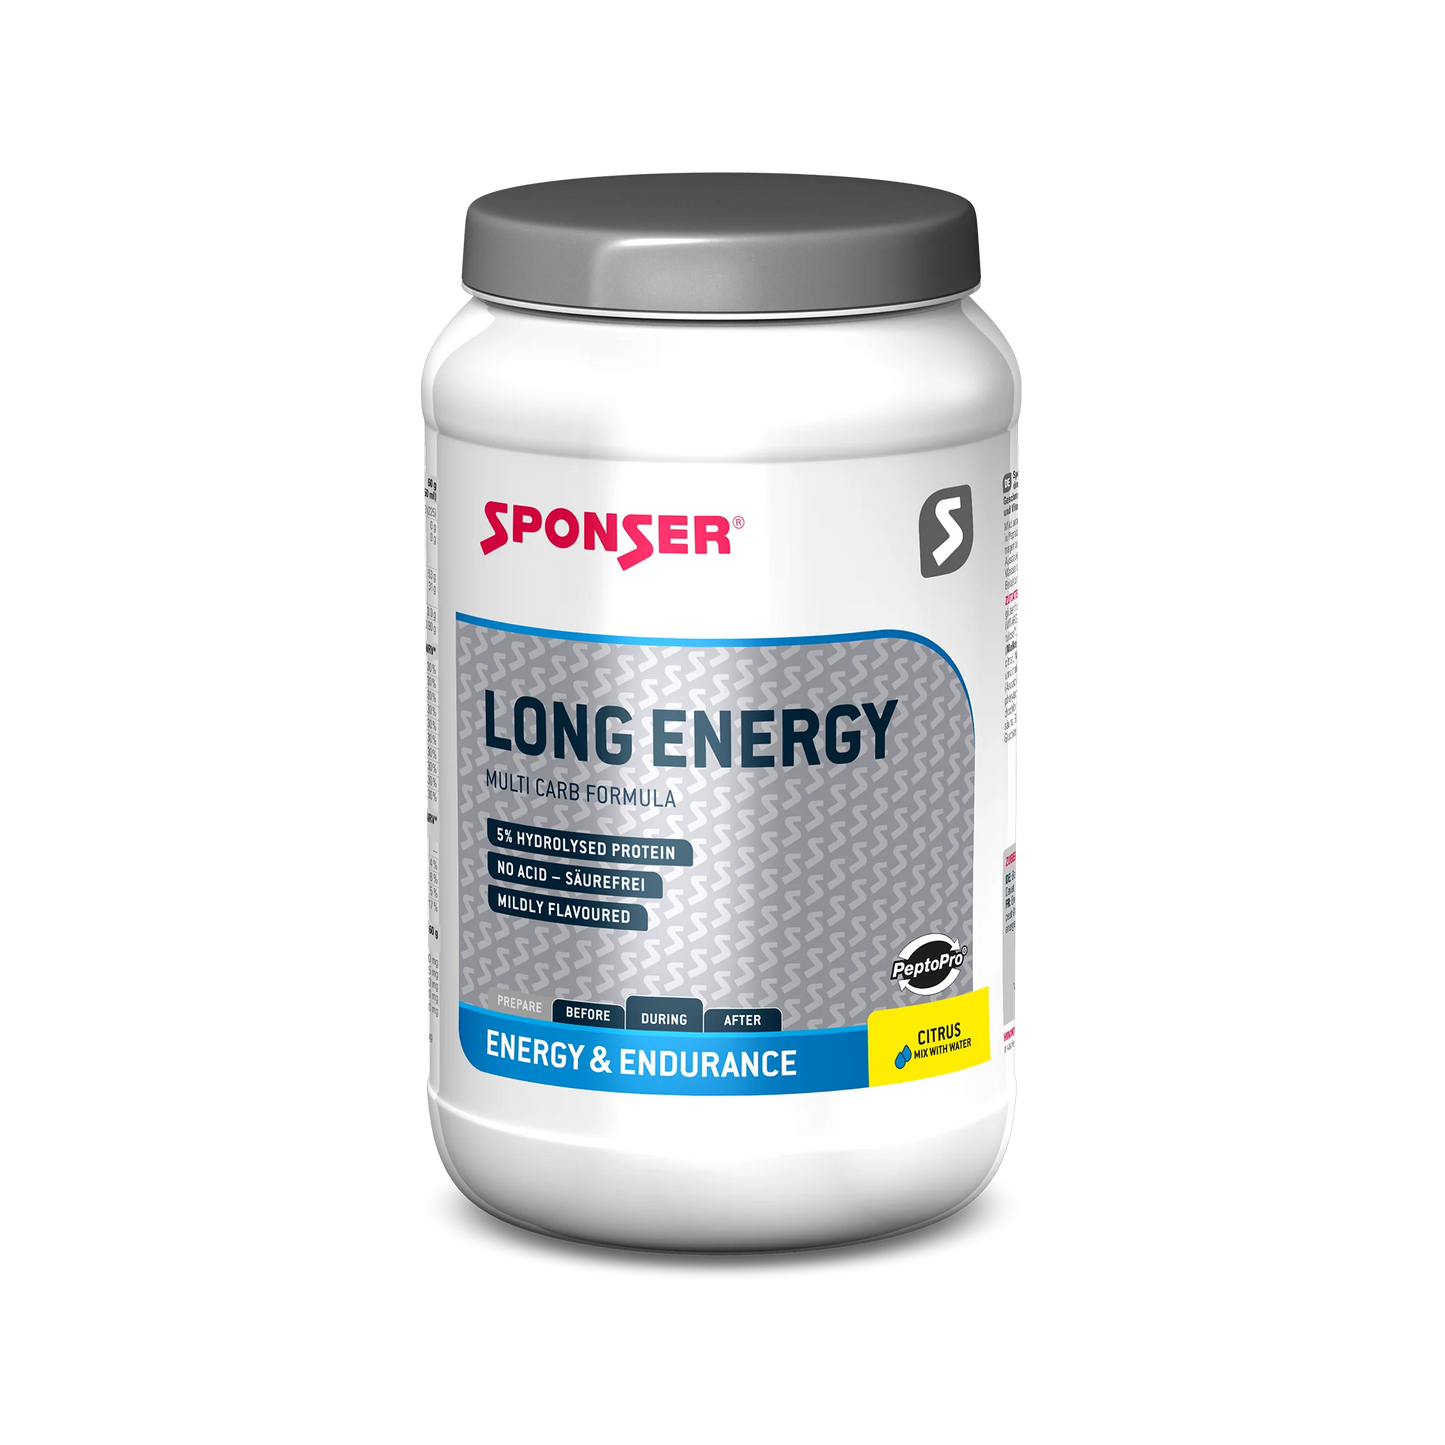 SPONSER LONG ENERGY